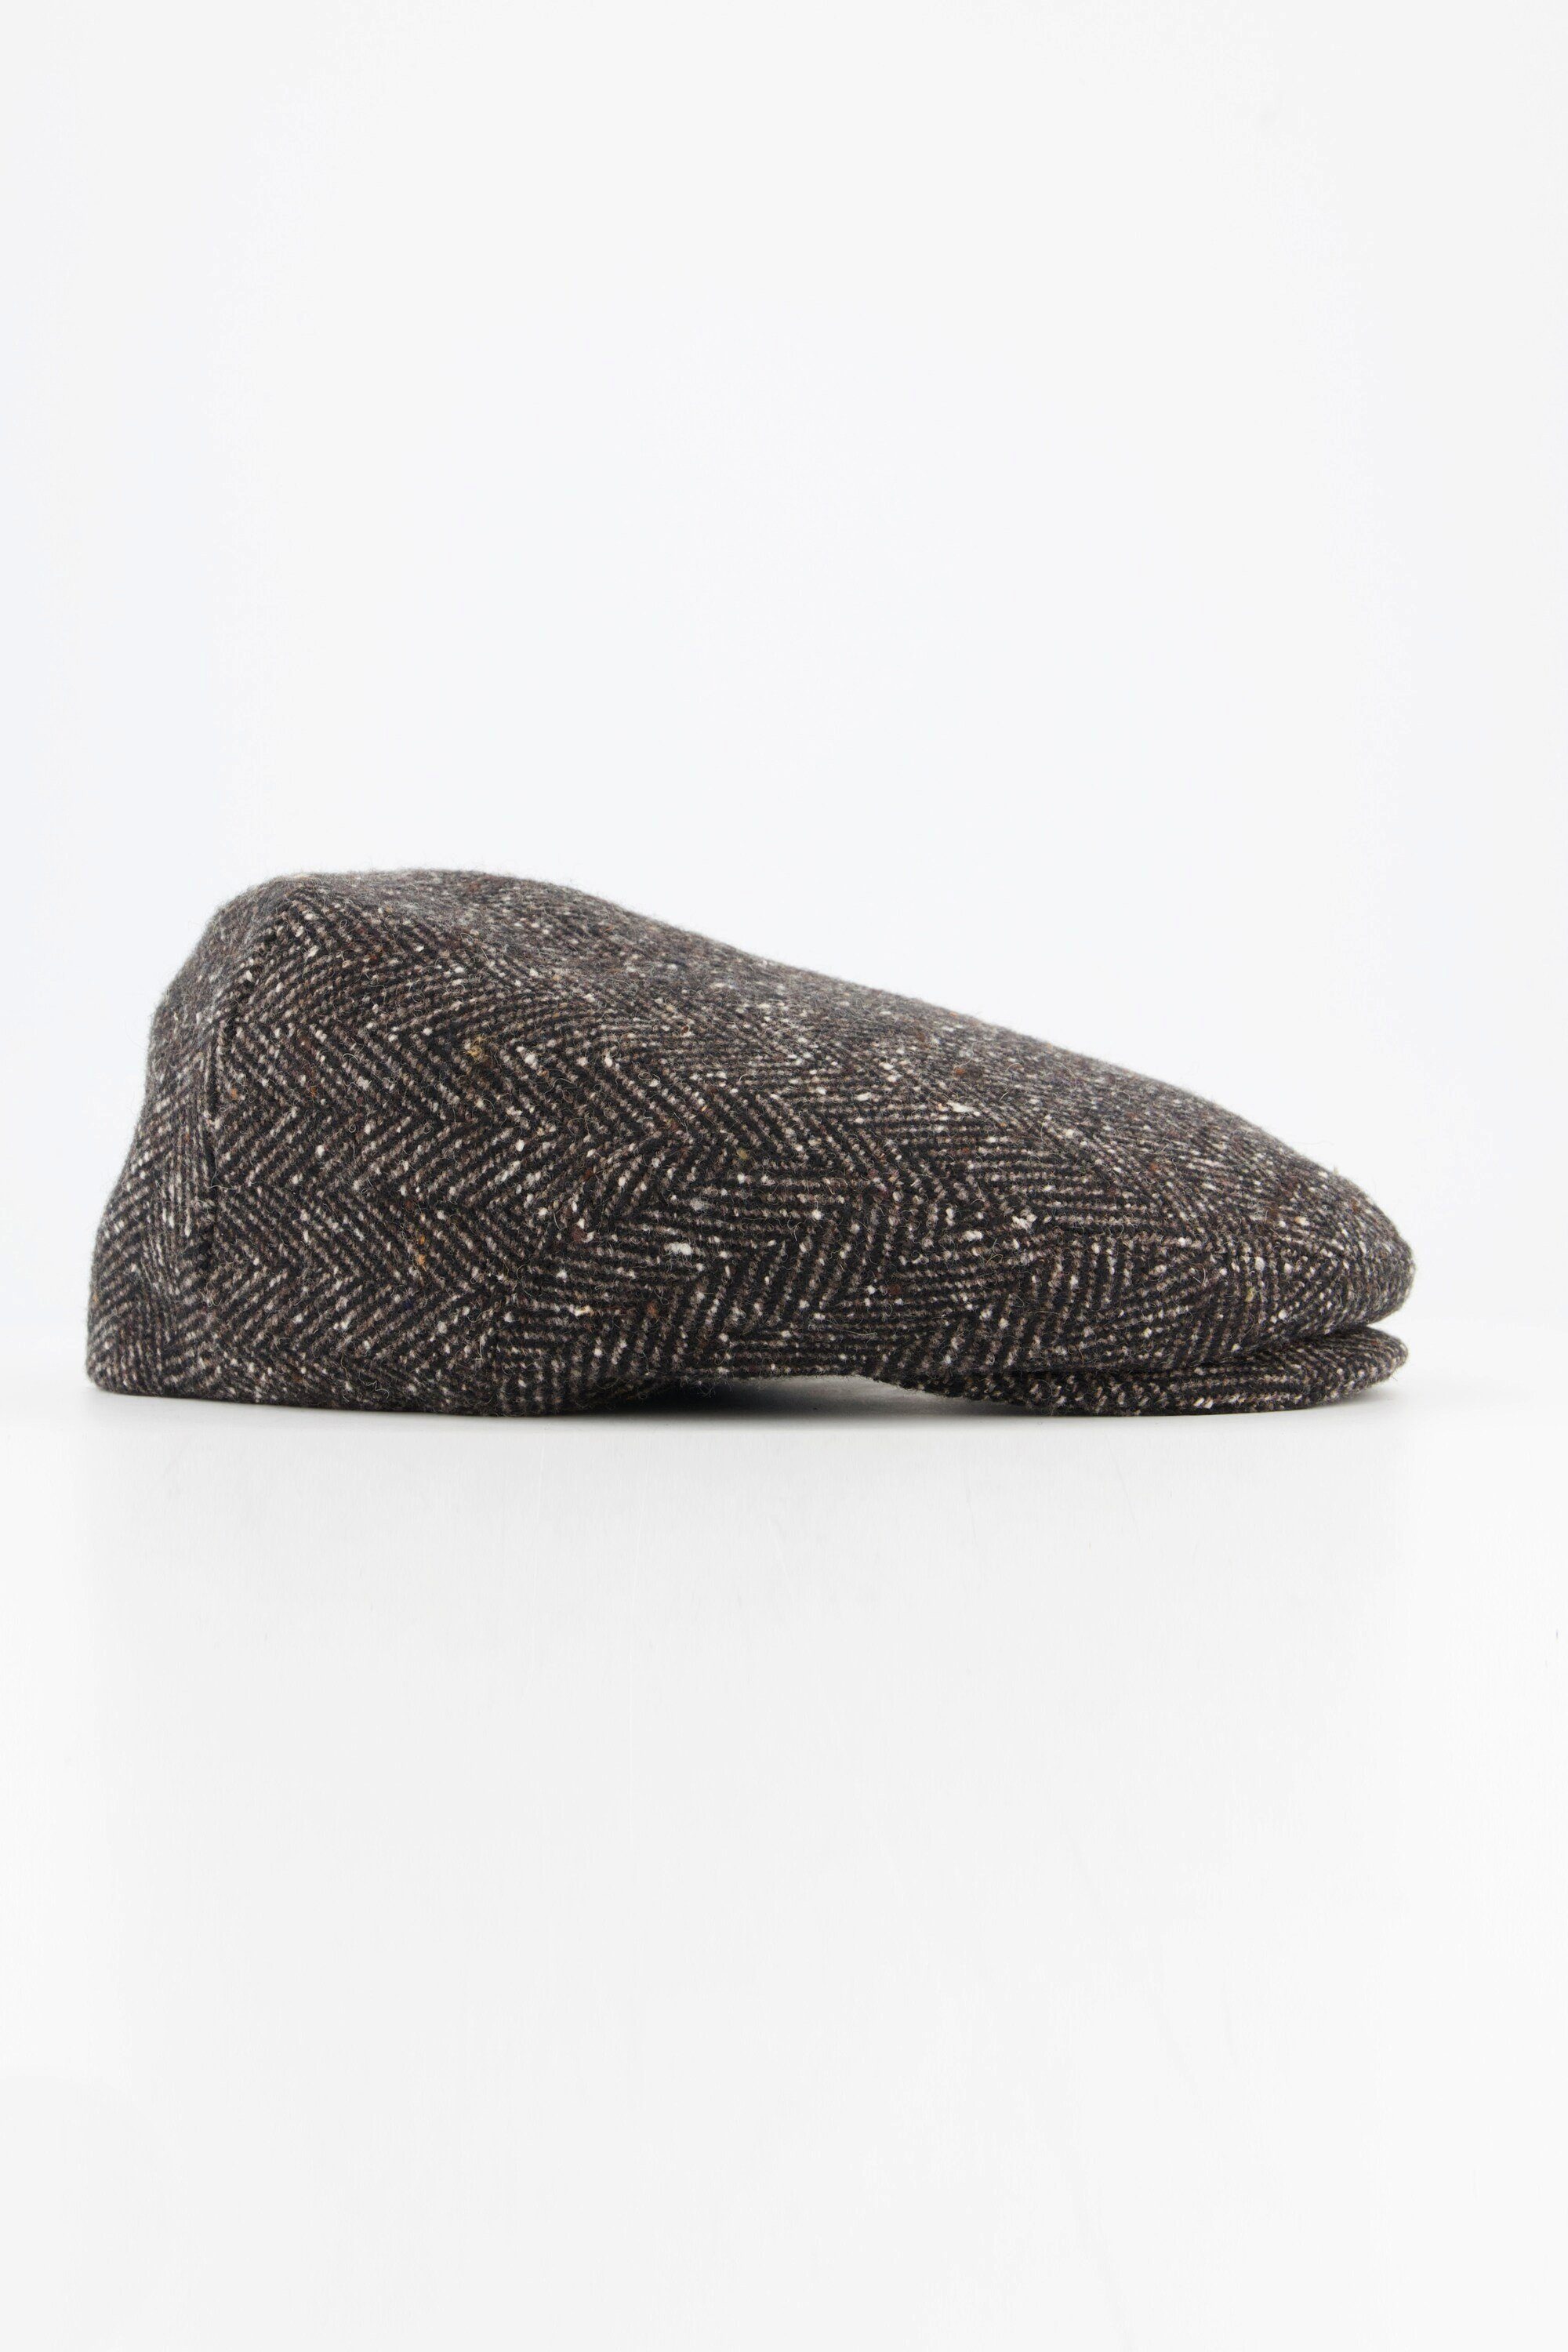 Strickhandschuhe braun Schirmmütze Woll-Qualität Fischgrat-Muster JP1880